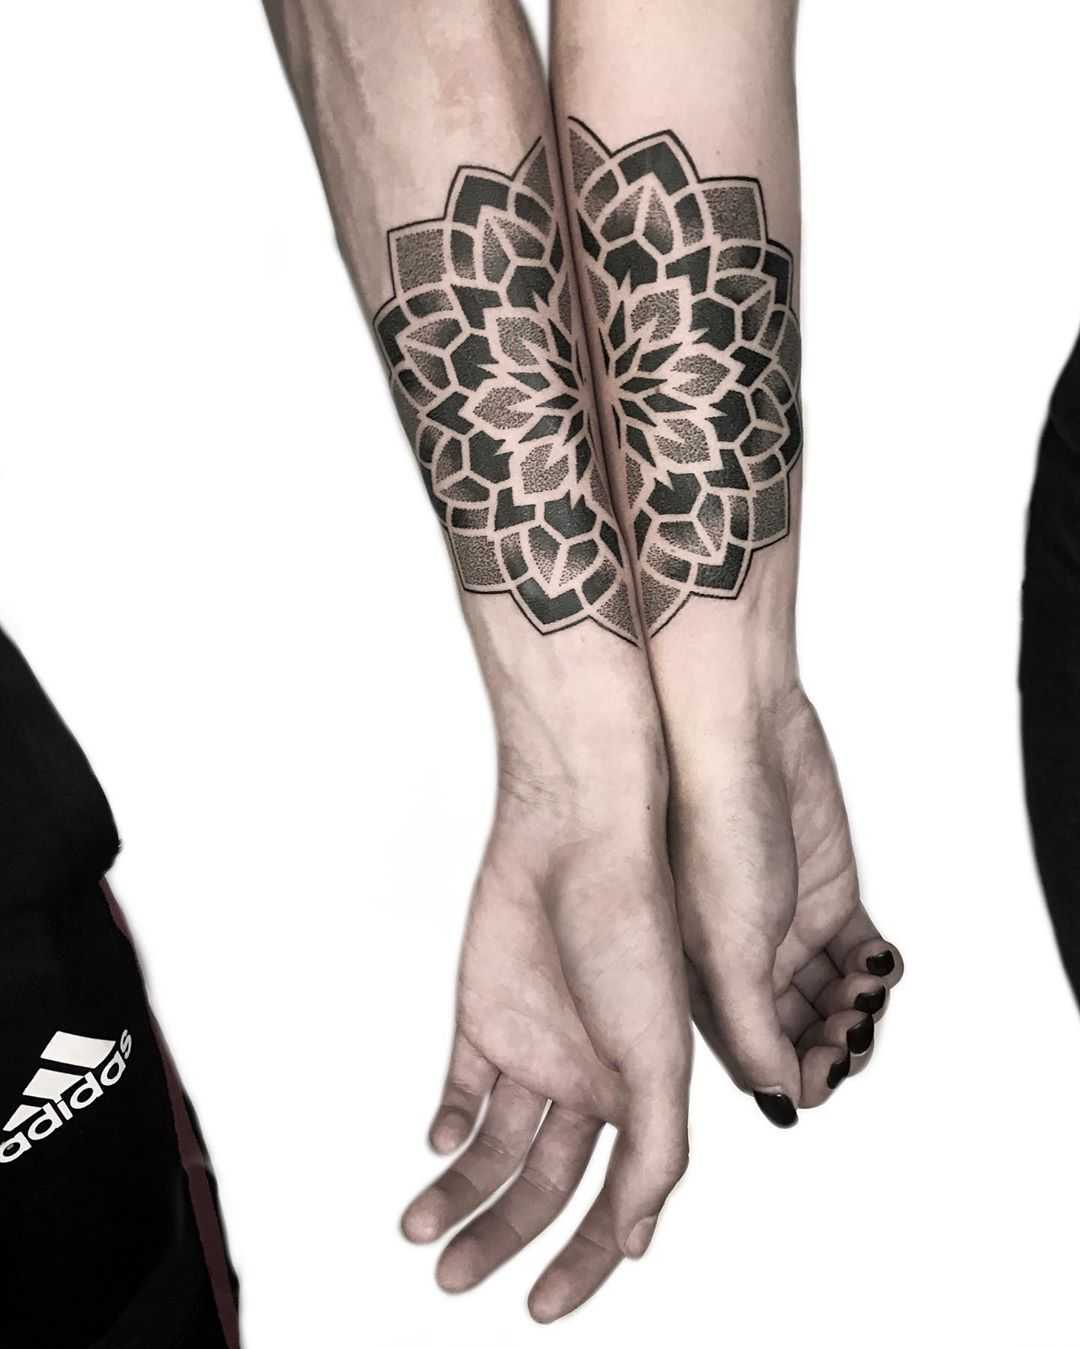 Matching brother mandalas by tattooist NEENO